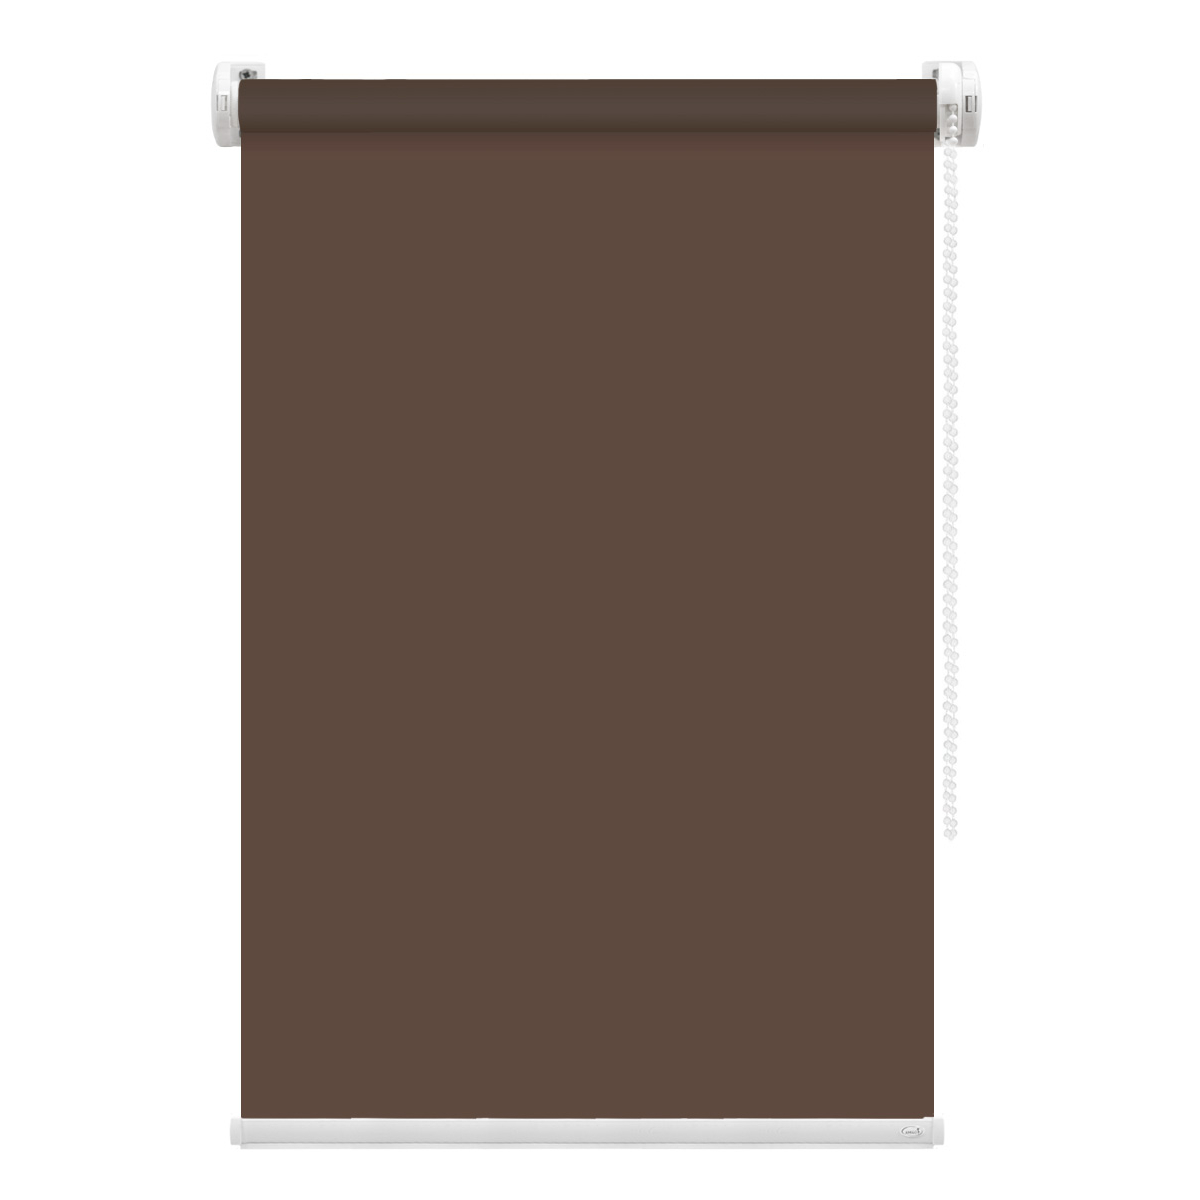 Рулонная штора FixLine Amigo Basic коричневая 40х160 см рулонная штора fixline amigo basic коричневая 50х160 см